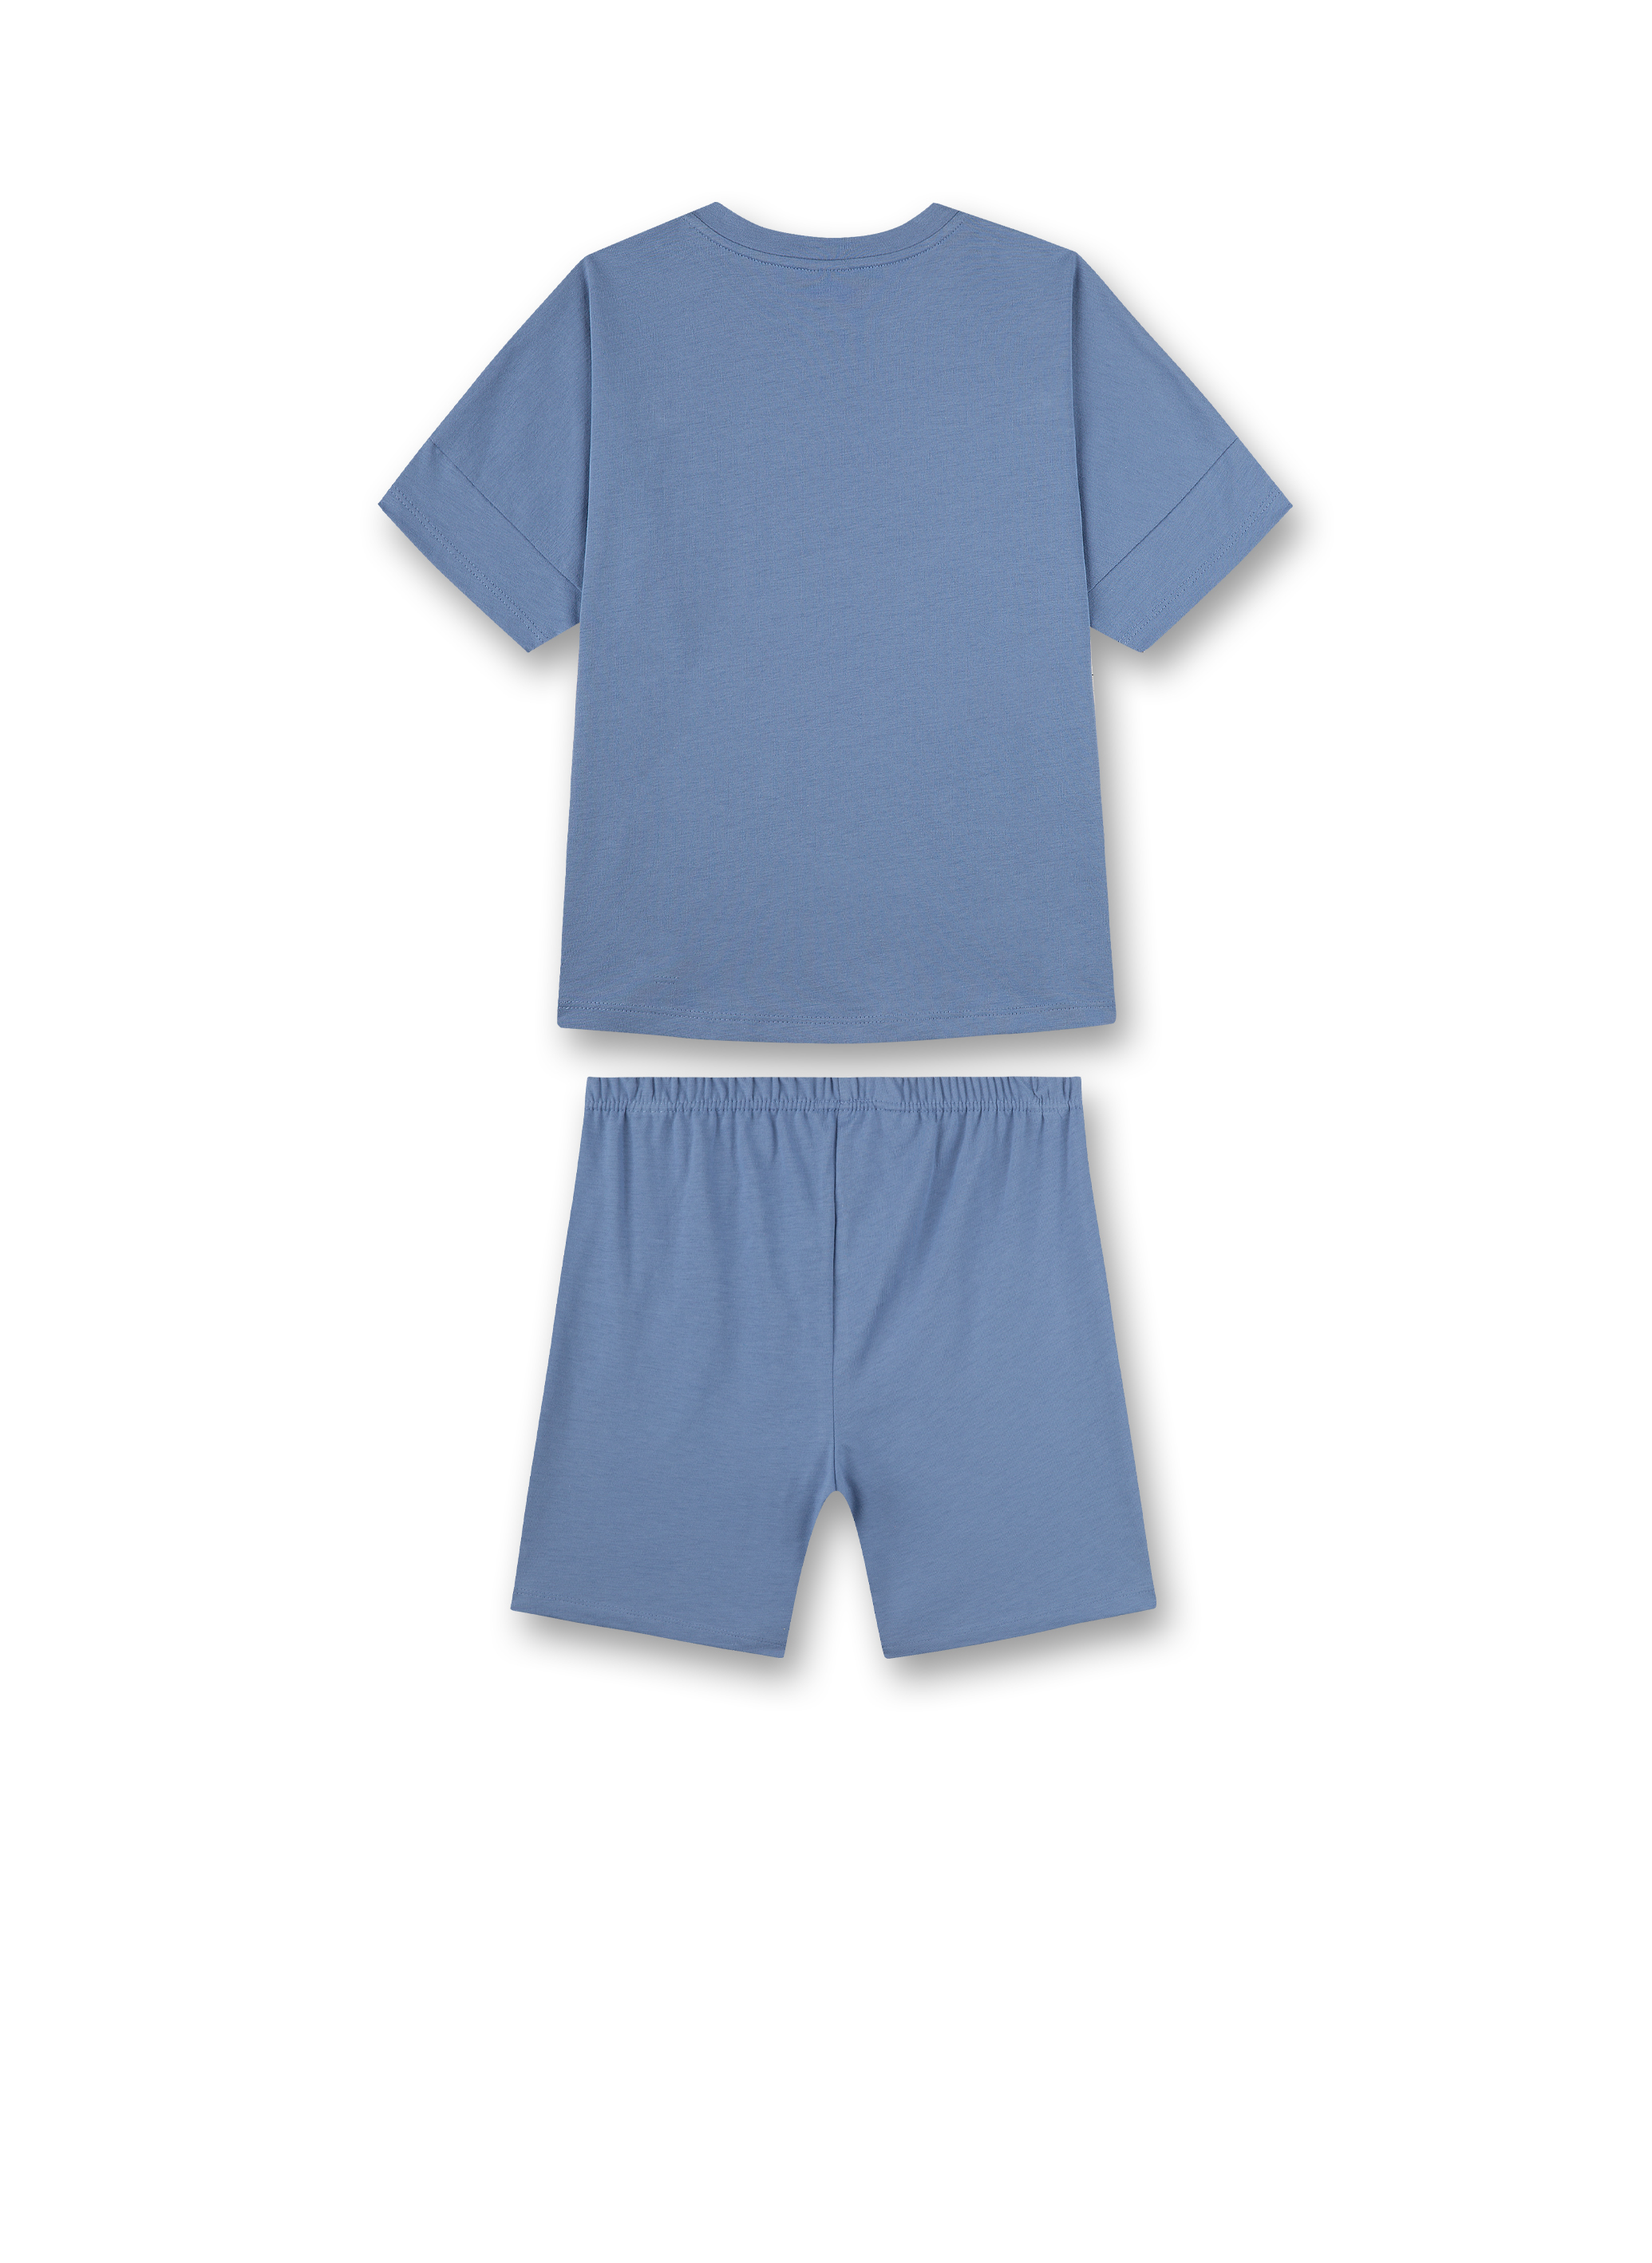 Mädchen-Schlafanzug kurz Blau